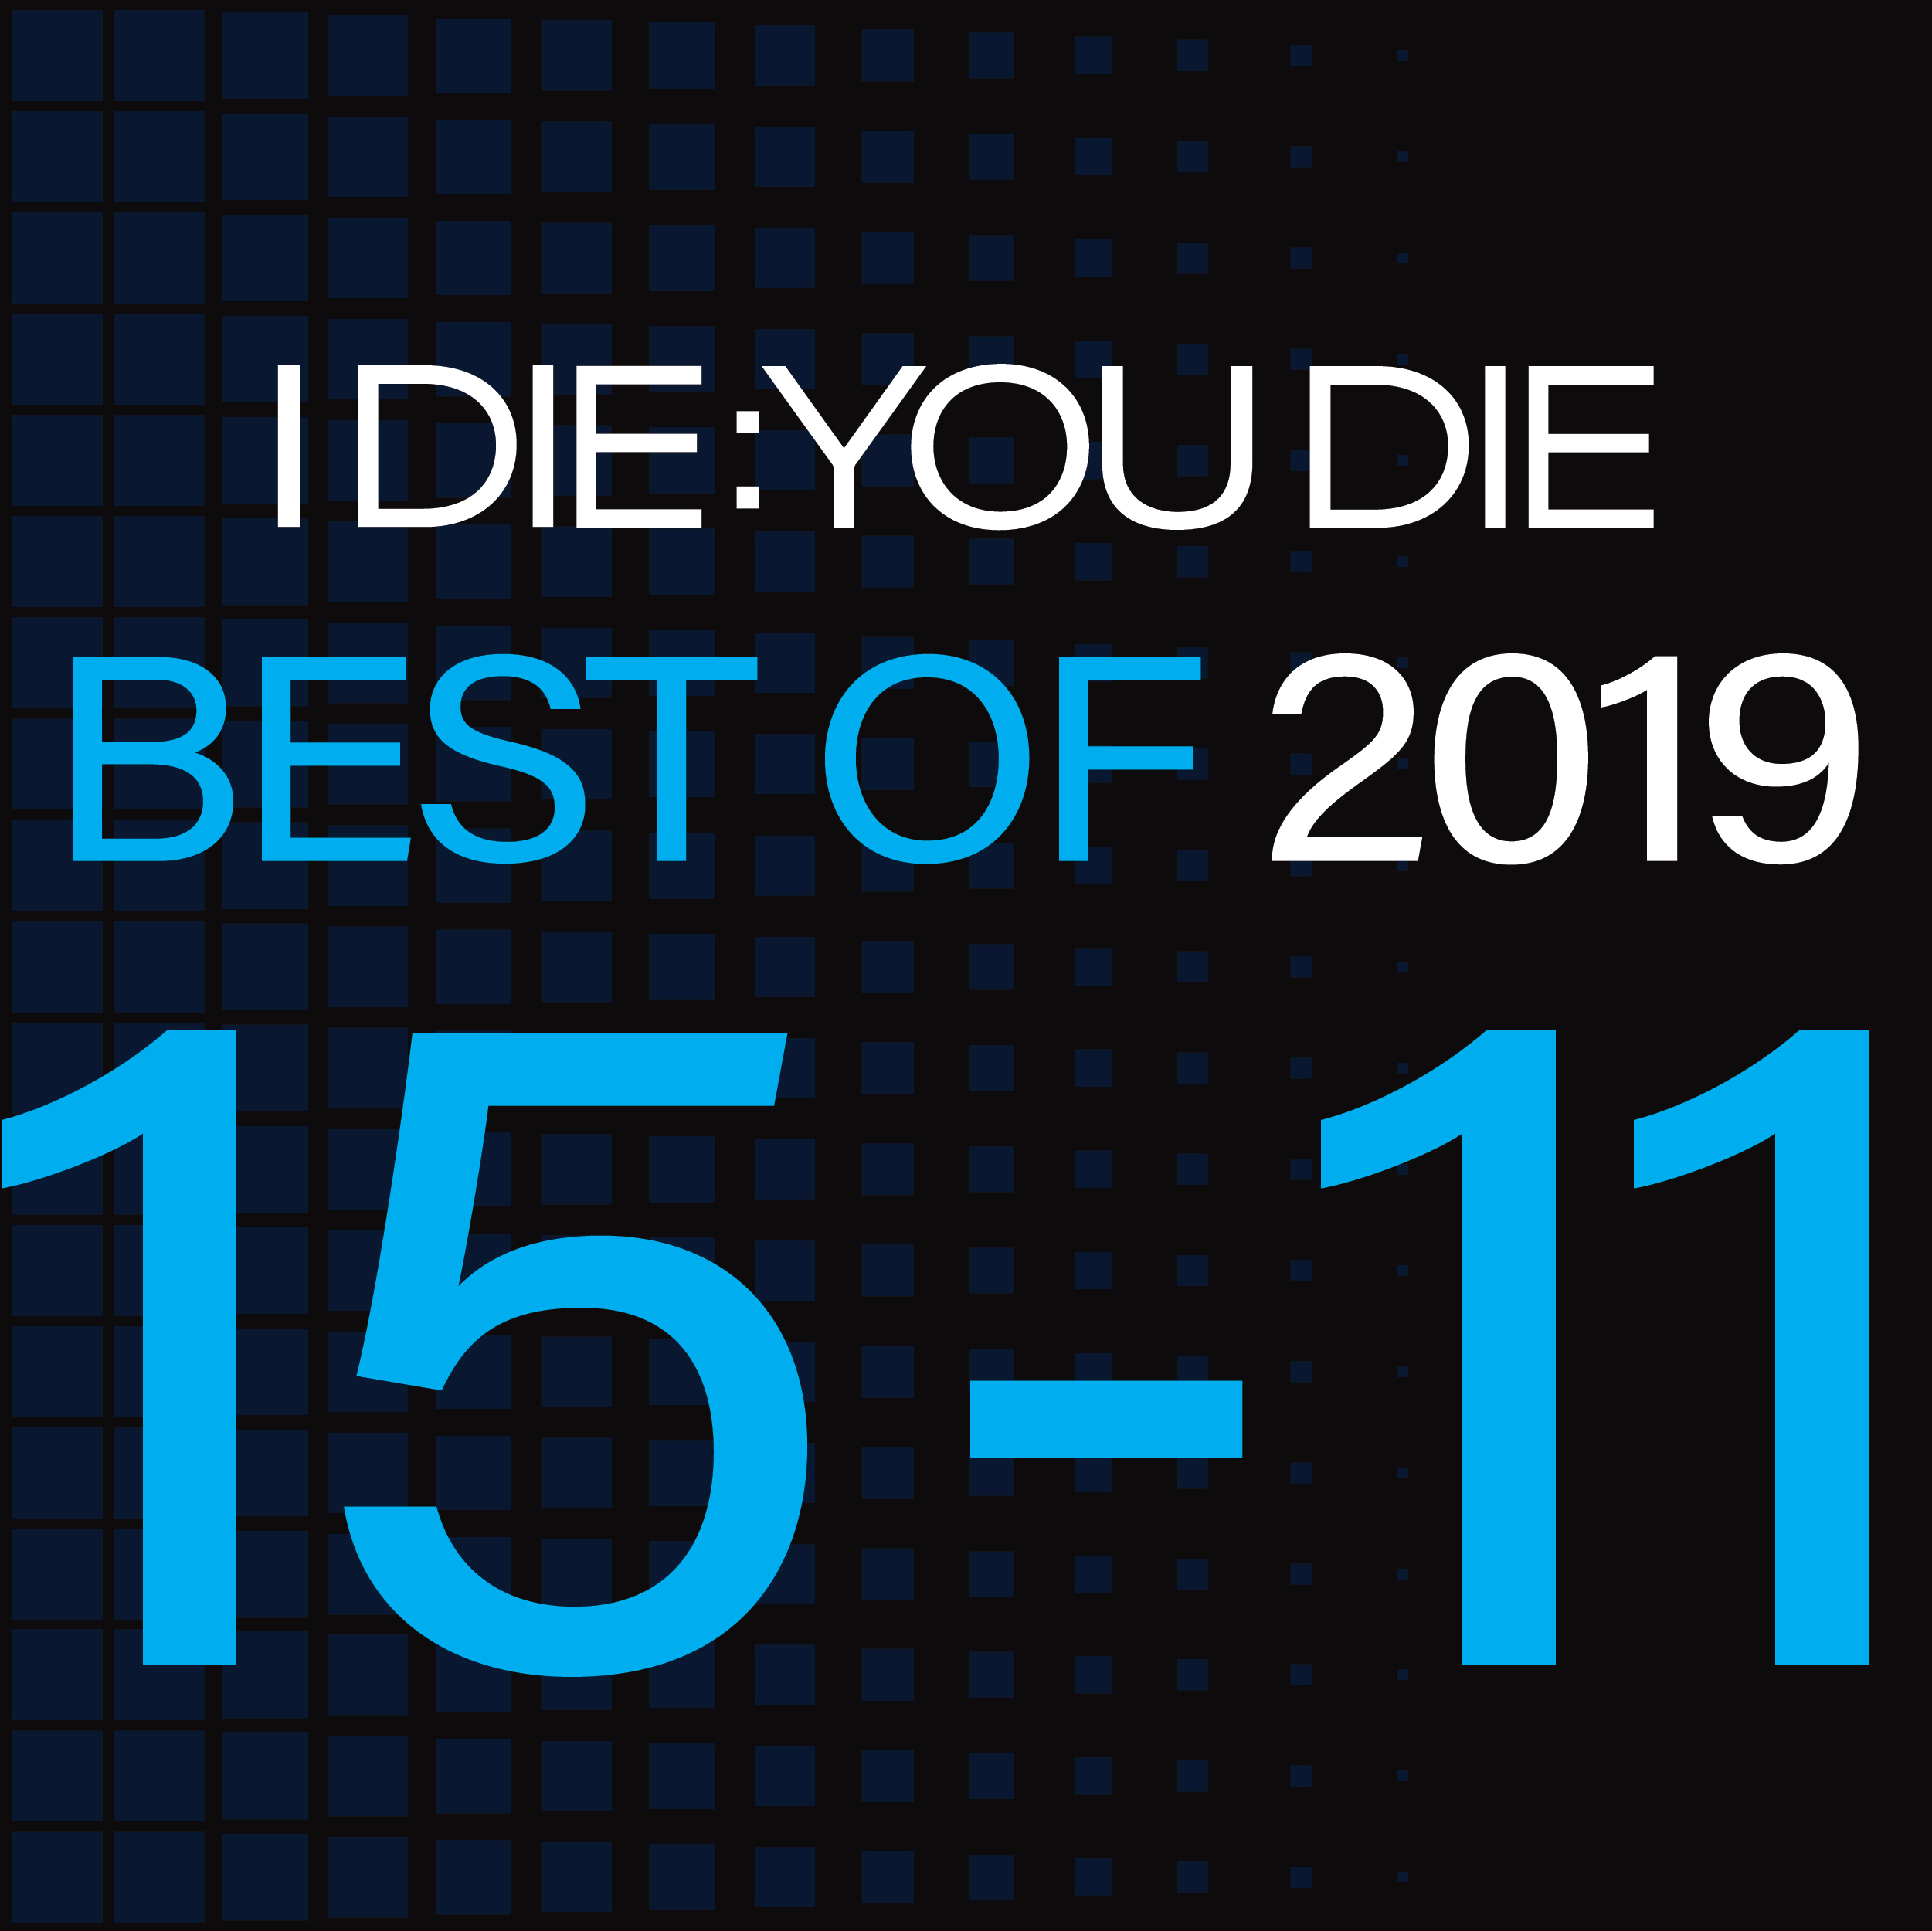 Best of 2019: 15-11